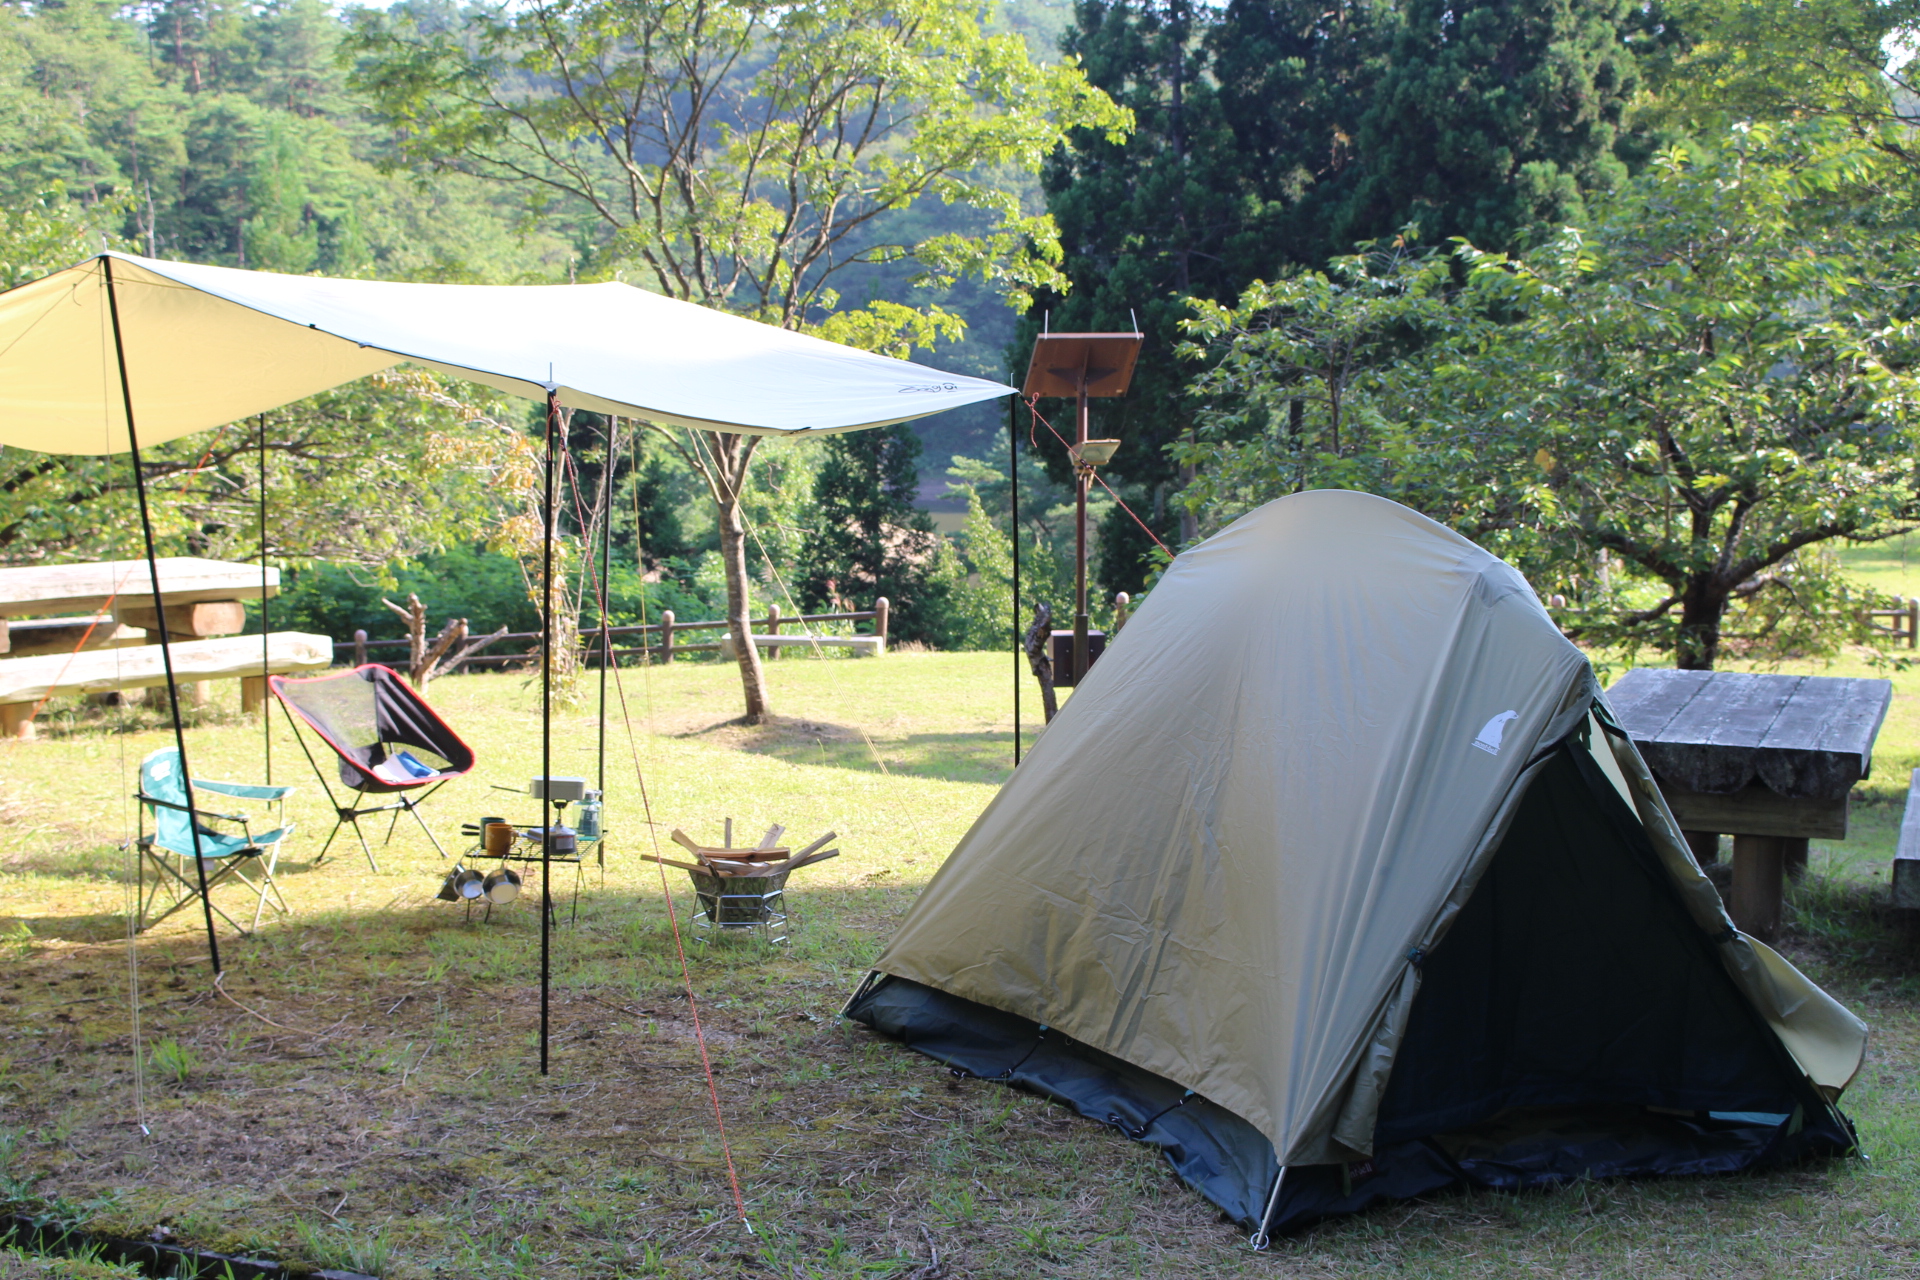 緑の木々に囲まれた芝生の上に、テントとタープテント、キャンピングチェアが置かれた、はねがわキャンプ場の写真